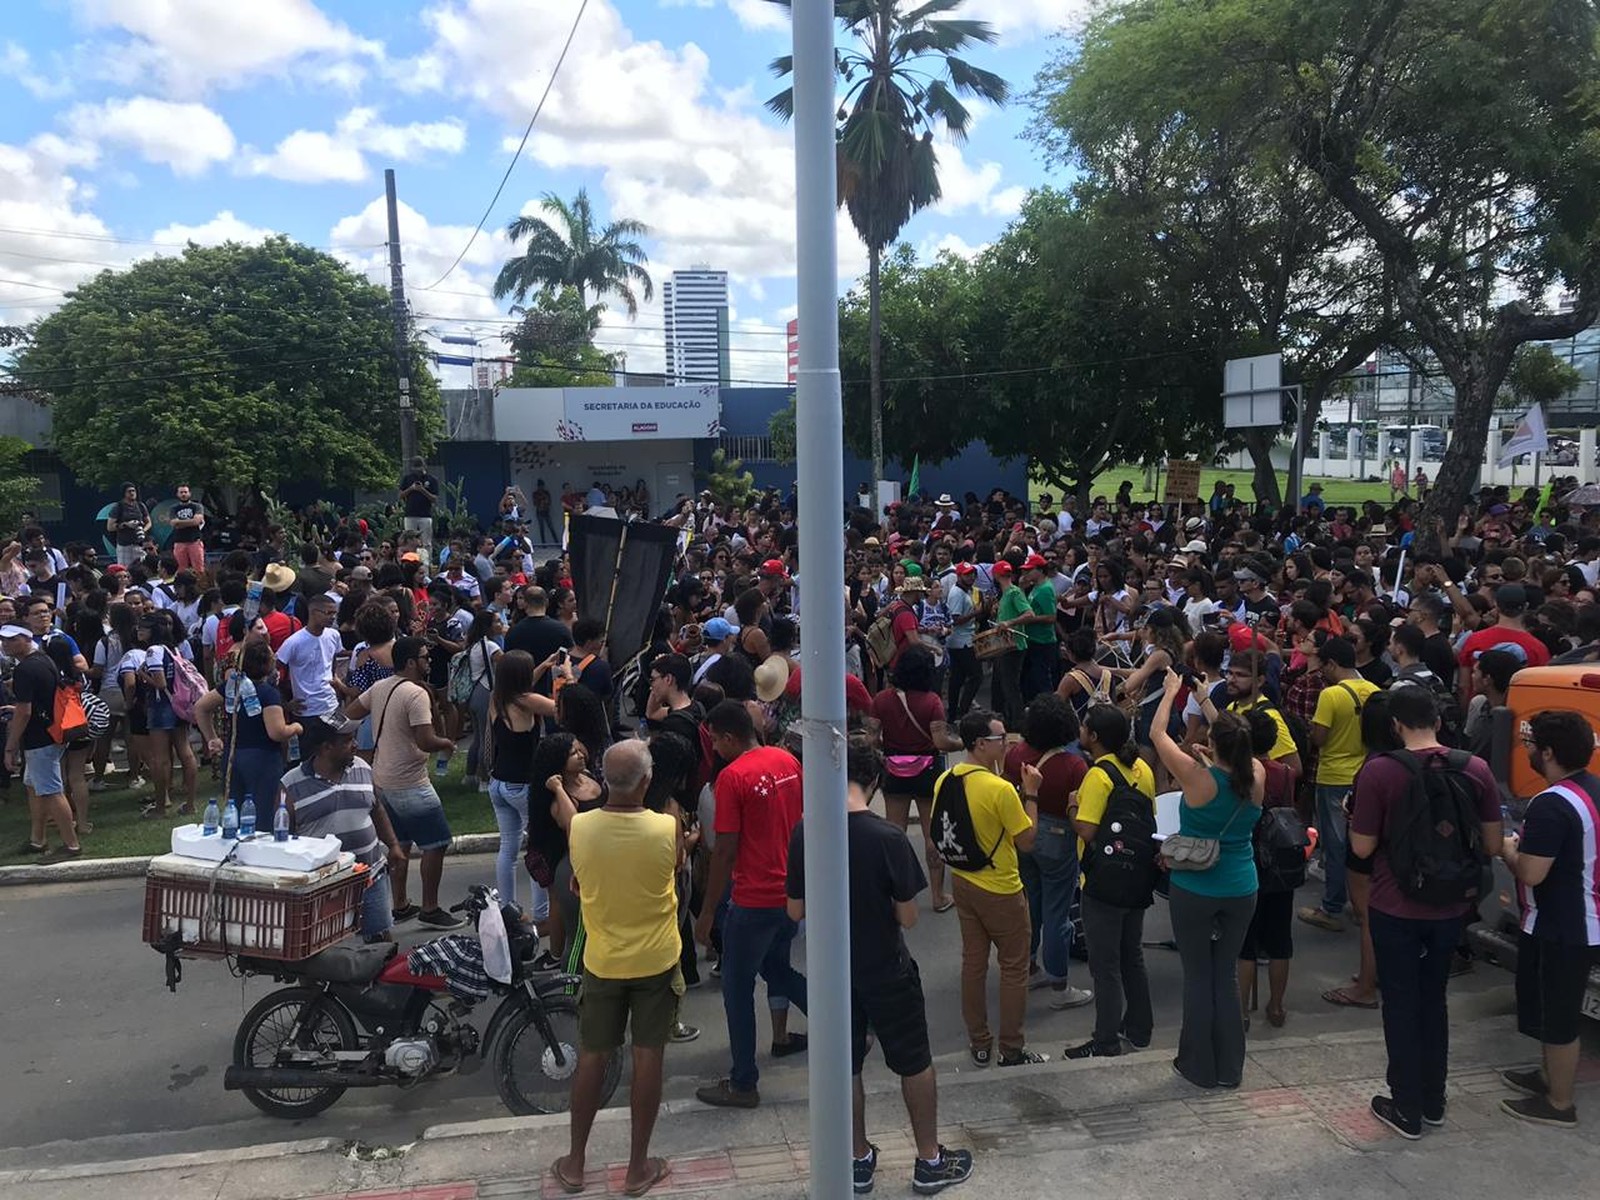  Concentração do protesto na Educação no Cepa, em Maceió — Foto: Michelle Farias/G1 